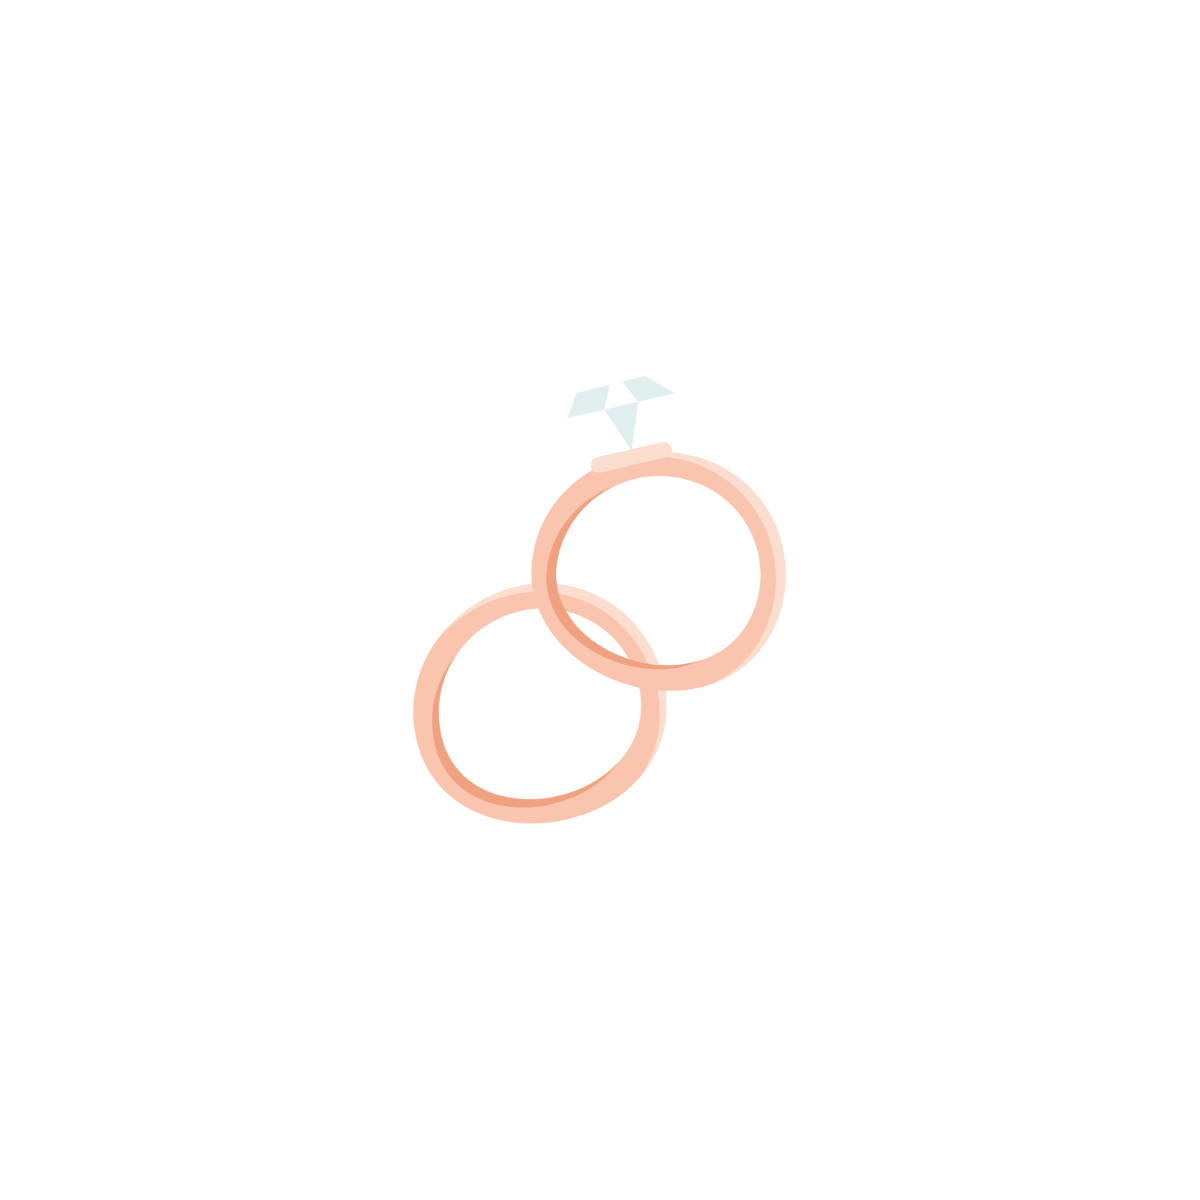 Wedding Ring Illustration